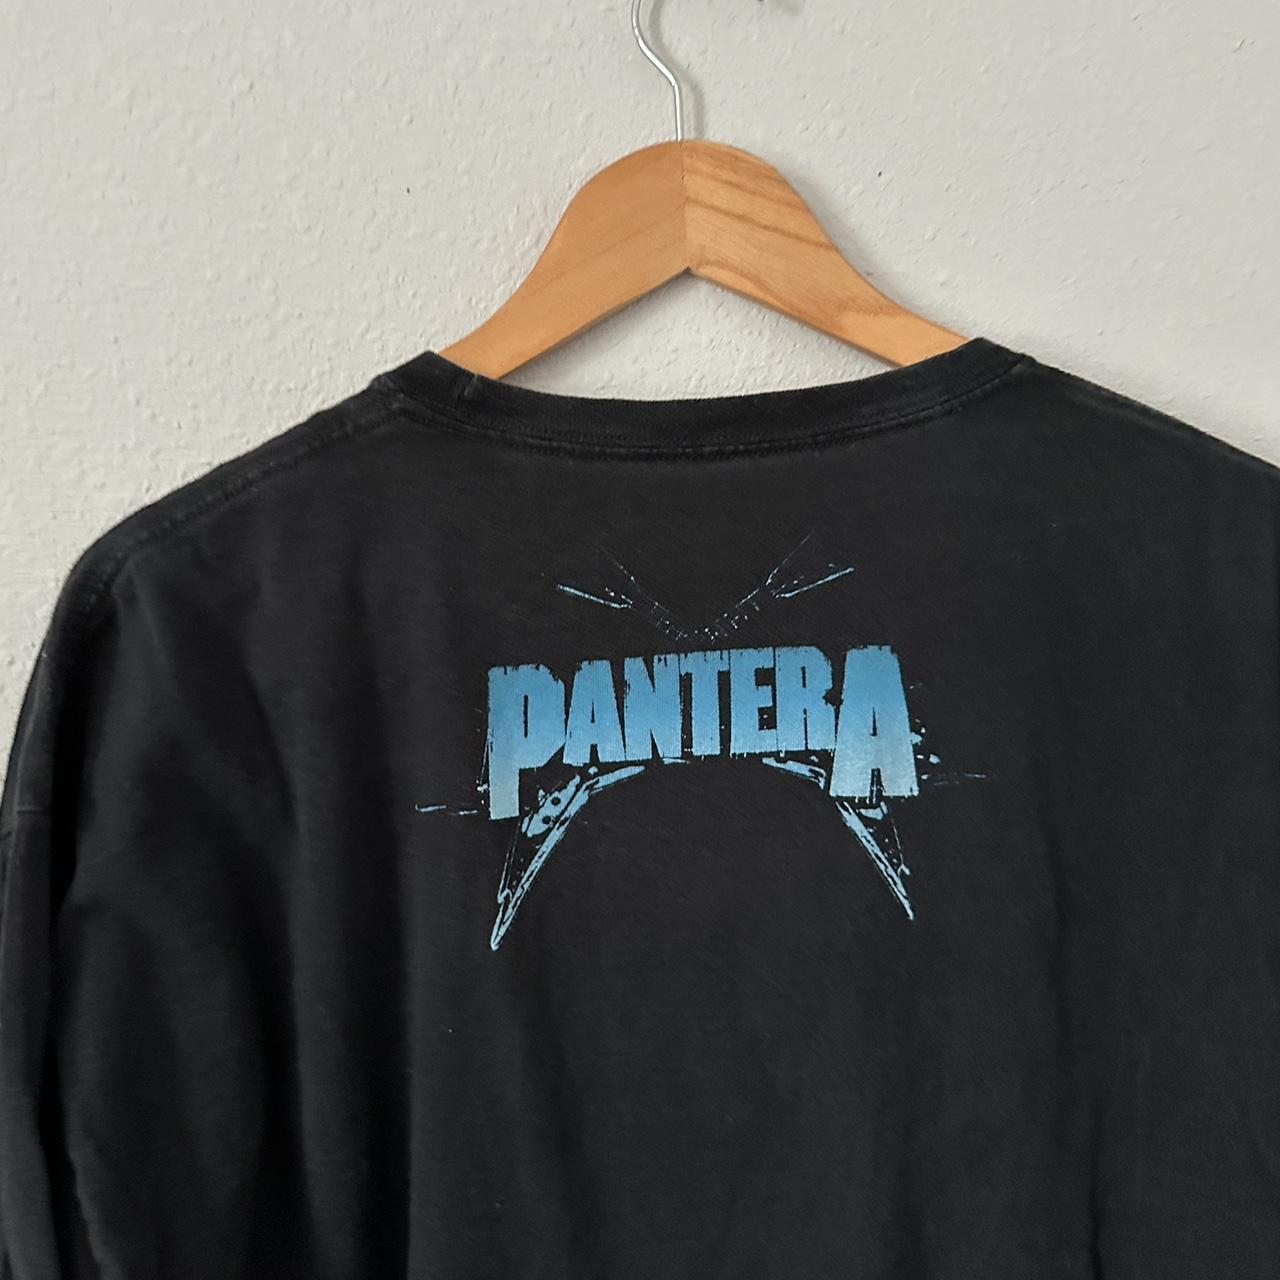 Vintage Pantera Band T Shirt @depop #vintage #y2k... - Depop